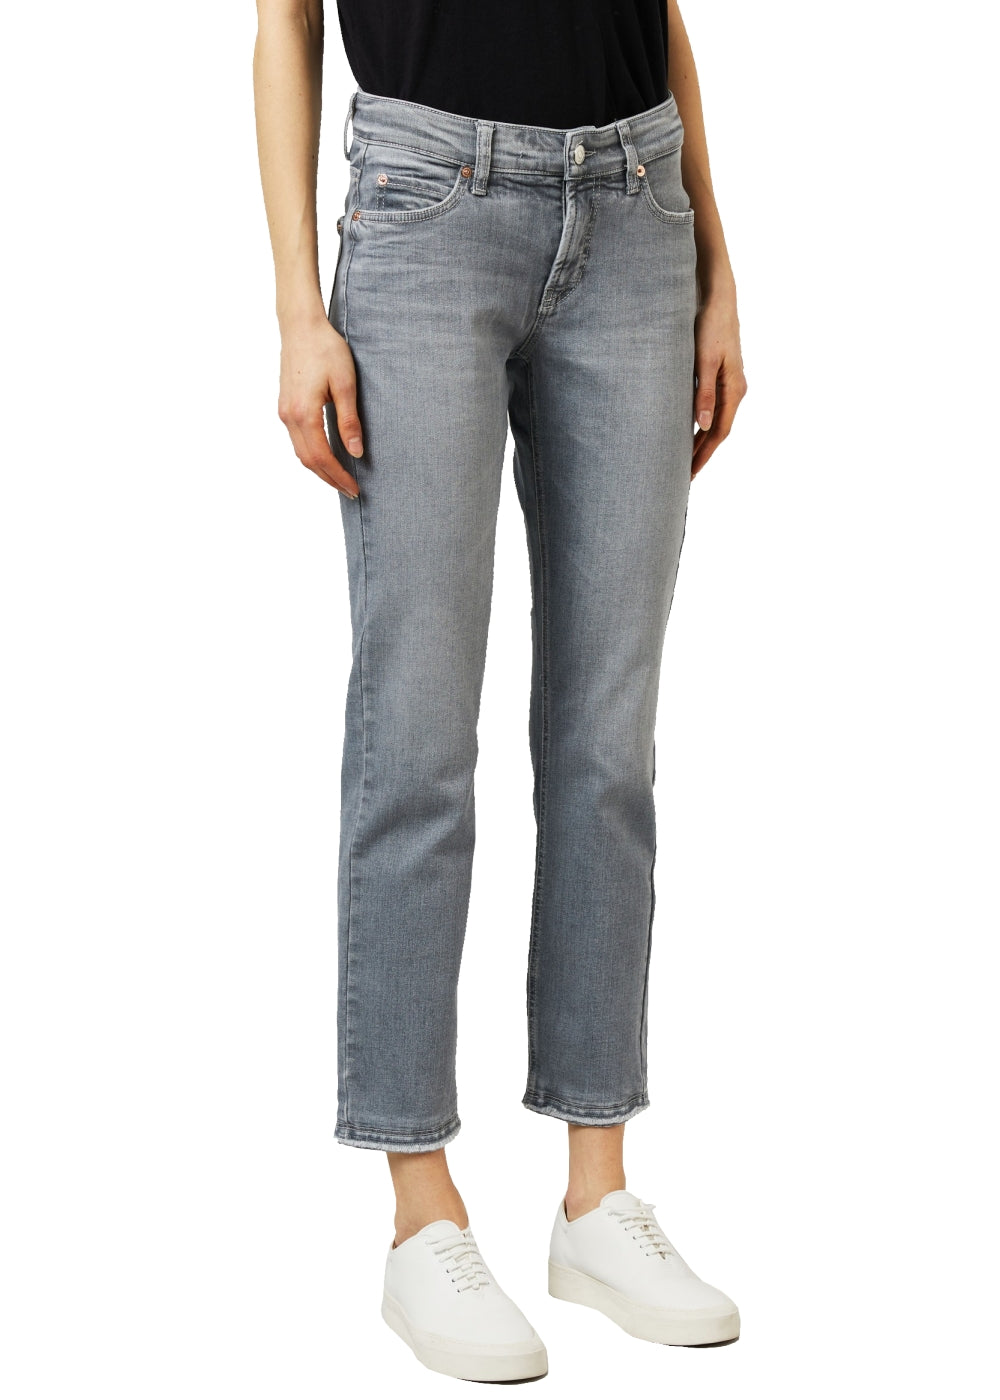 Cambio Jeans Paris in grau. Schmale 5-Pocket Hose in weicher Denimqualität von Cambio. Slim fit Jeans mit cropped Länge und offenkantigem Abschluss aus der neuen Cambio Kollektion.